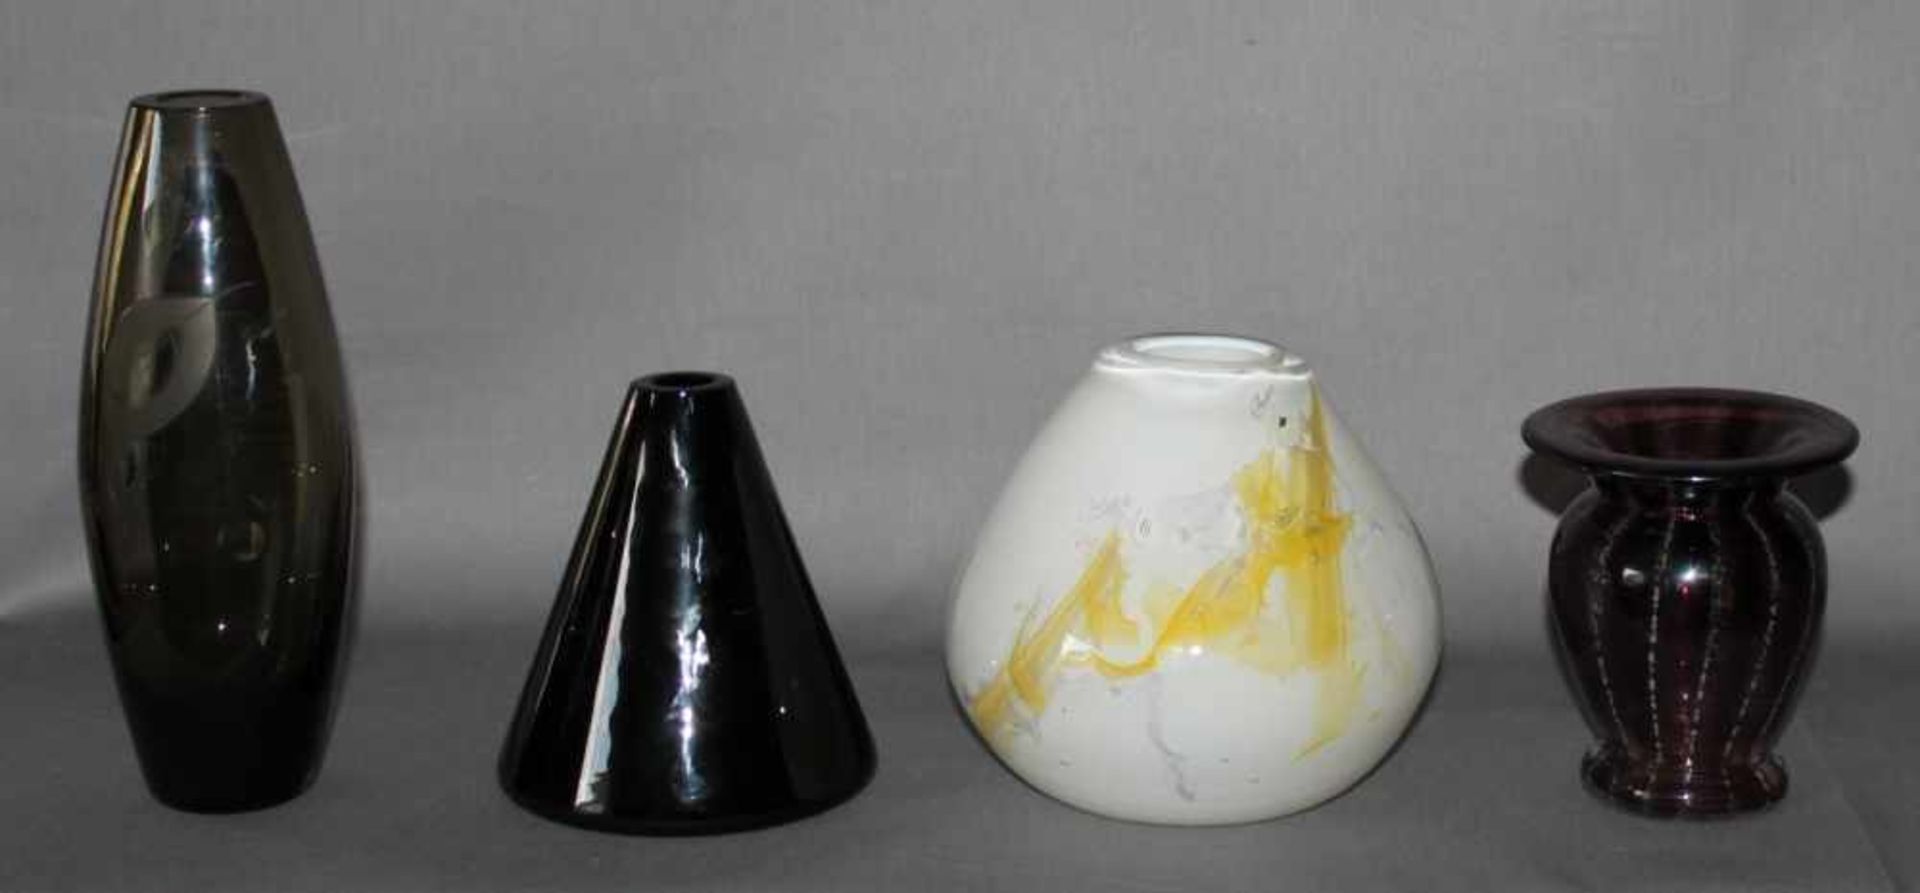 Glas. Europa. Kleine Sammlung mit 4 Vasen.Unterschiedliche Formen und Farben, verschiedene Größen.